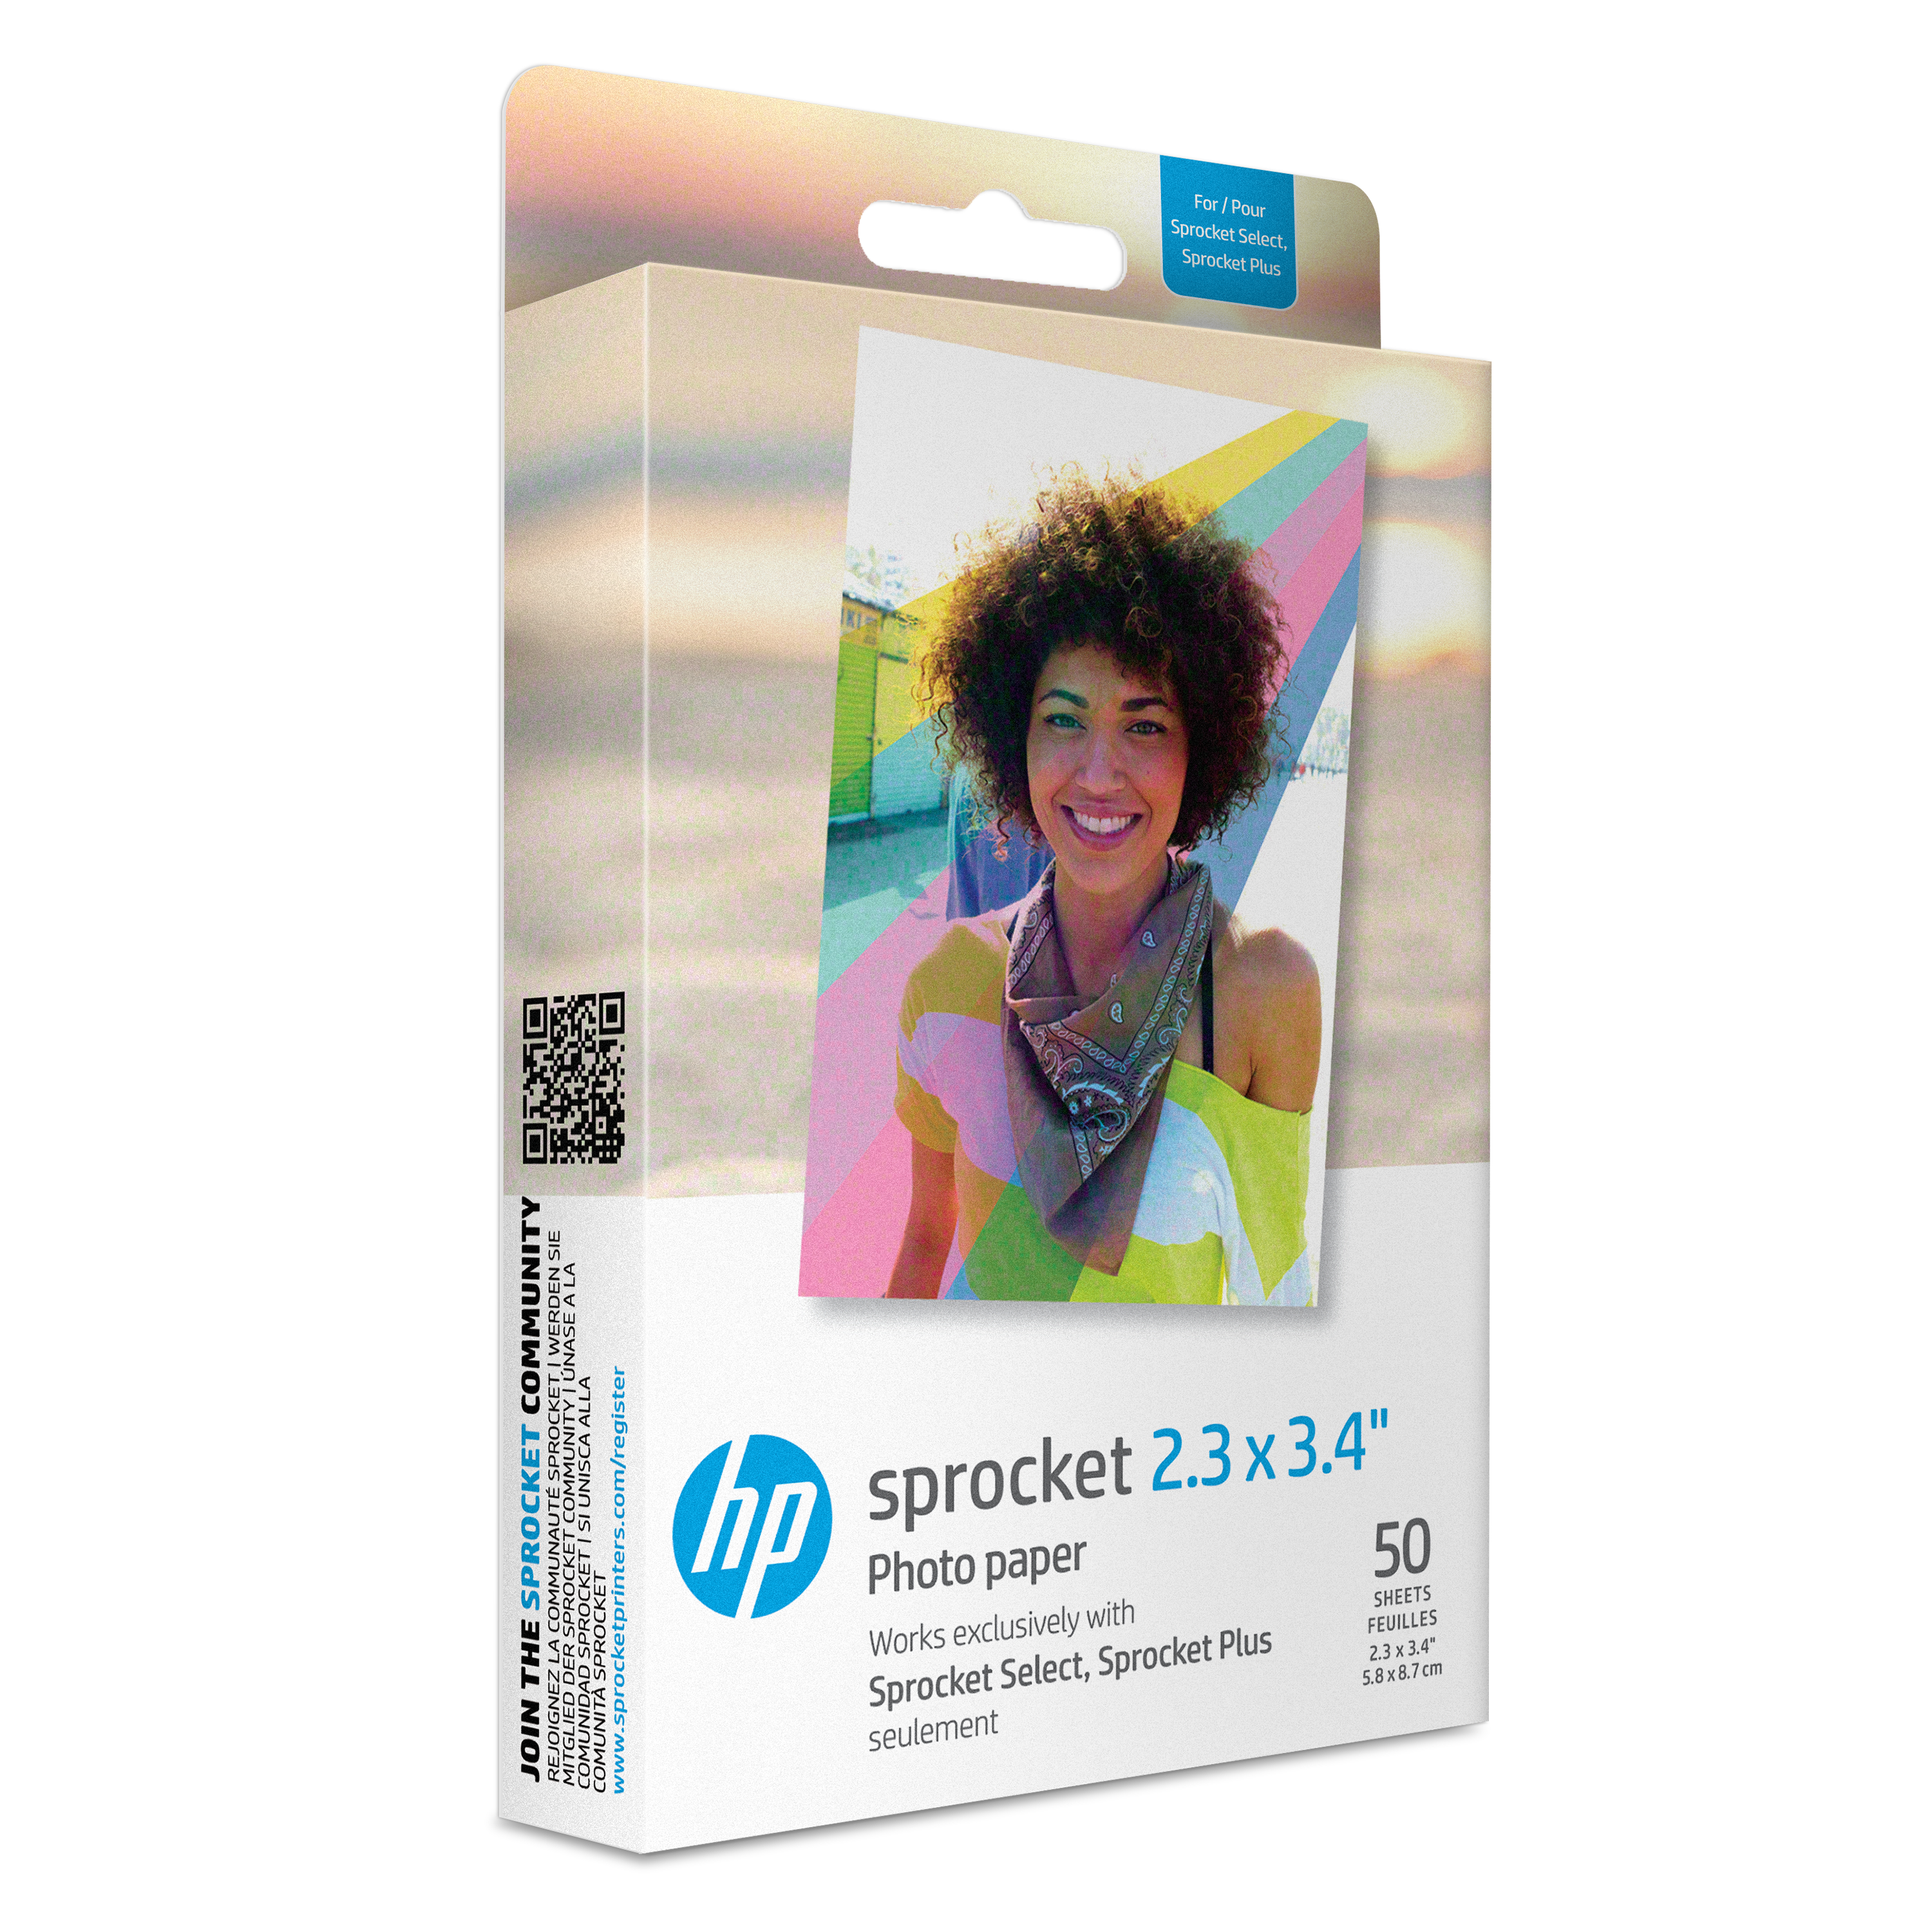 HP Sprocket 2.3